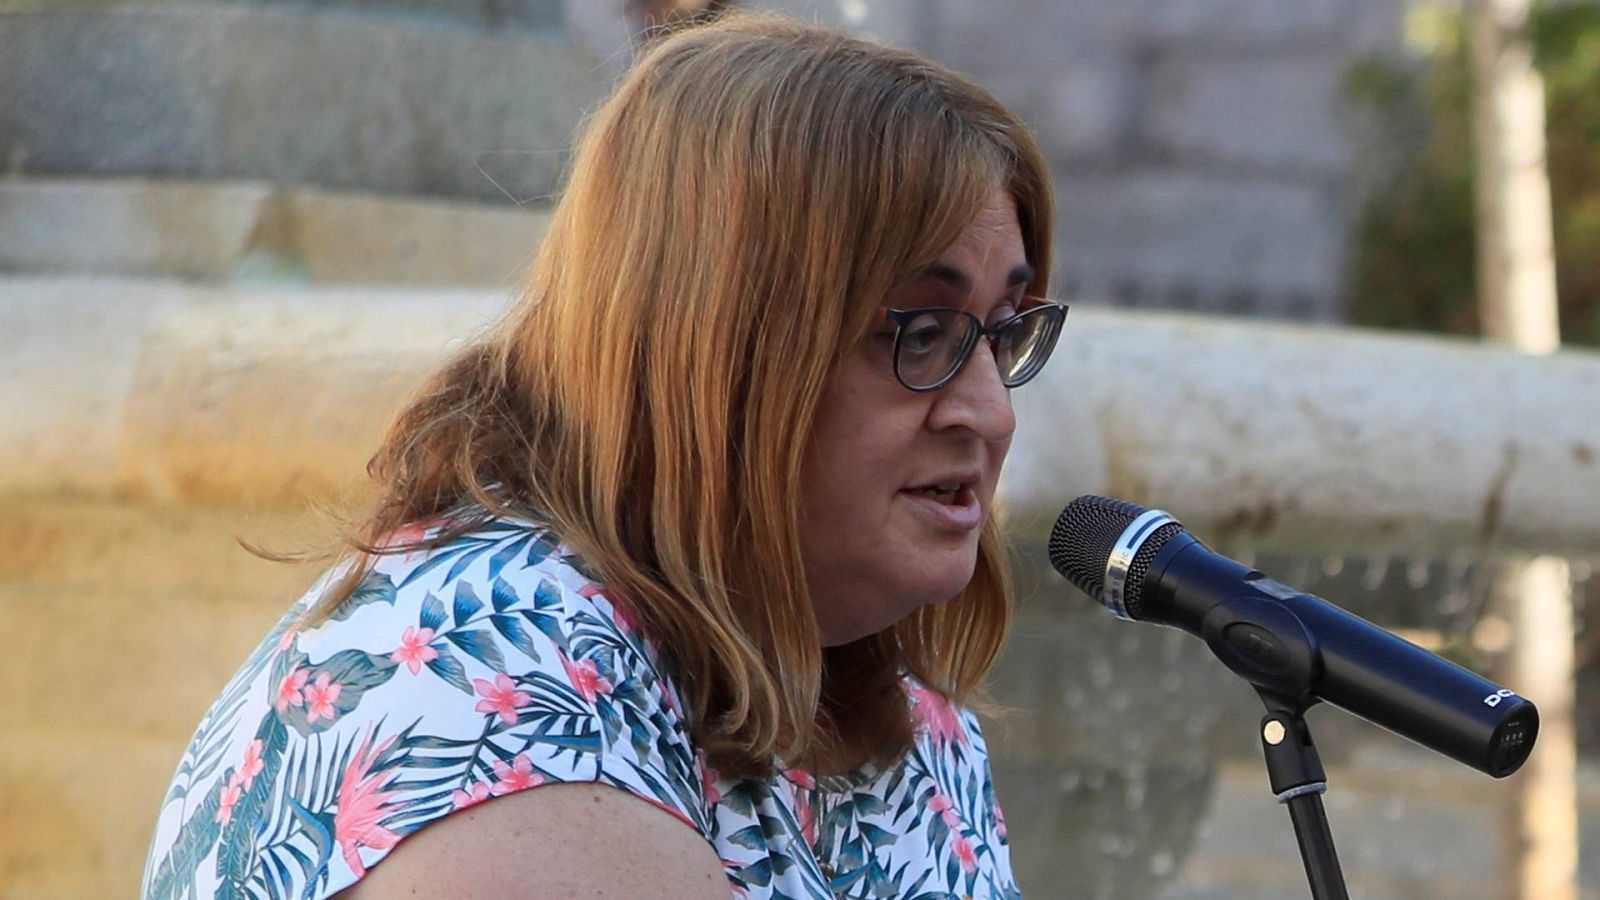 24 horas - Carmen García de Merlo, COGAM: "La violencia está en aumento con o sin denuncias falsas" - Escuchar ahora